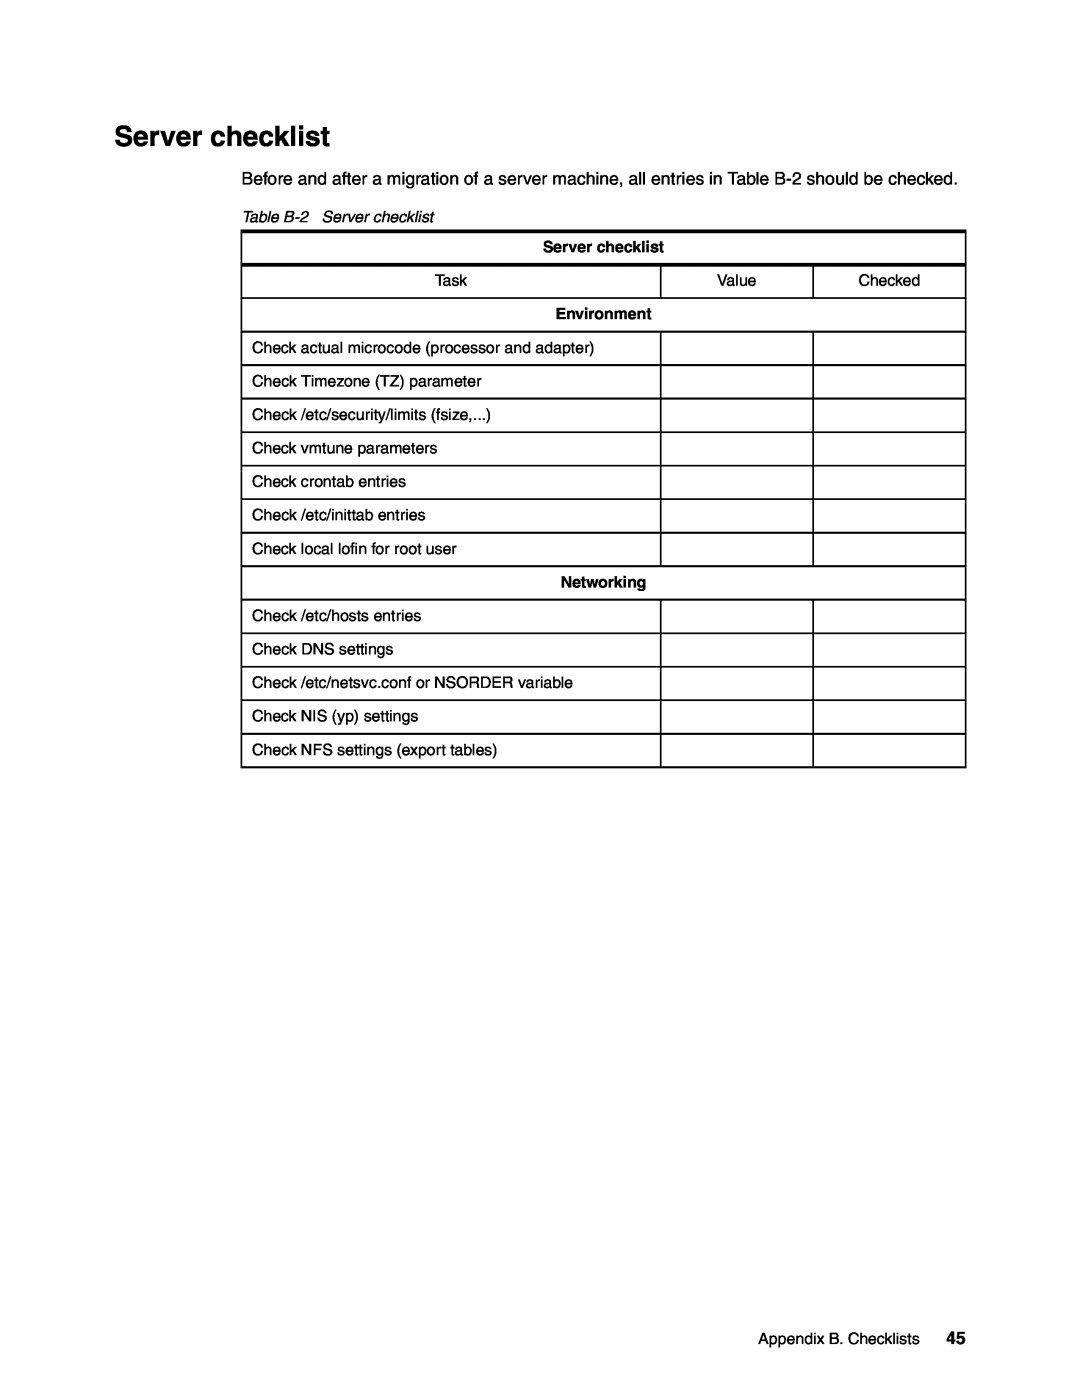 IBM AIX 4.3, AIX5L manual Table B-2Server checklist, Environment, Networking 